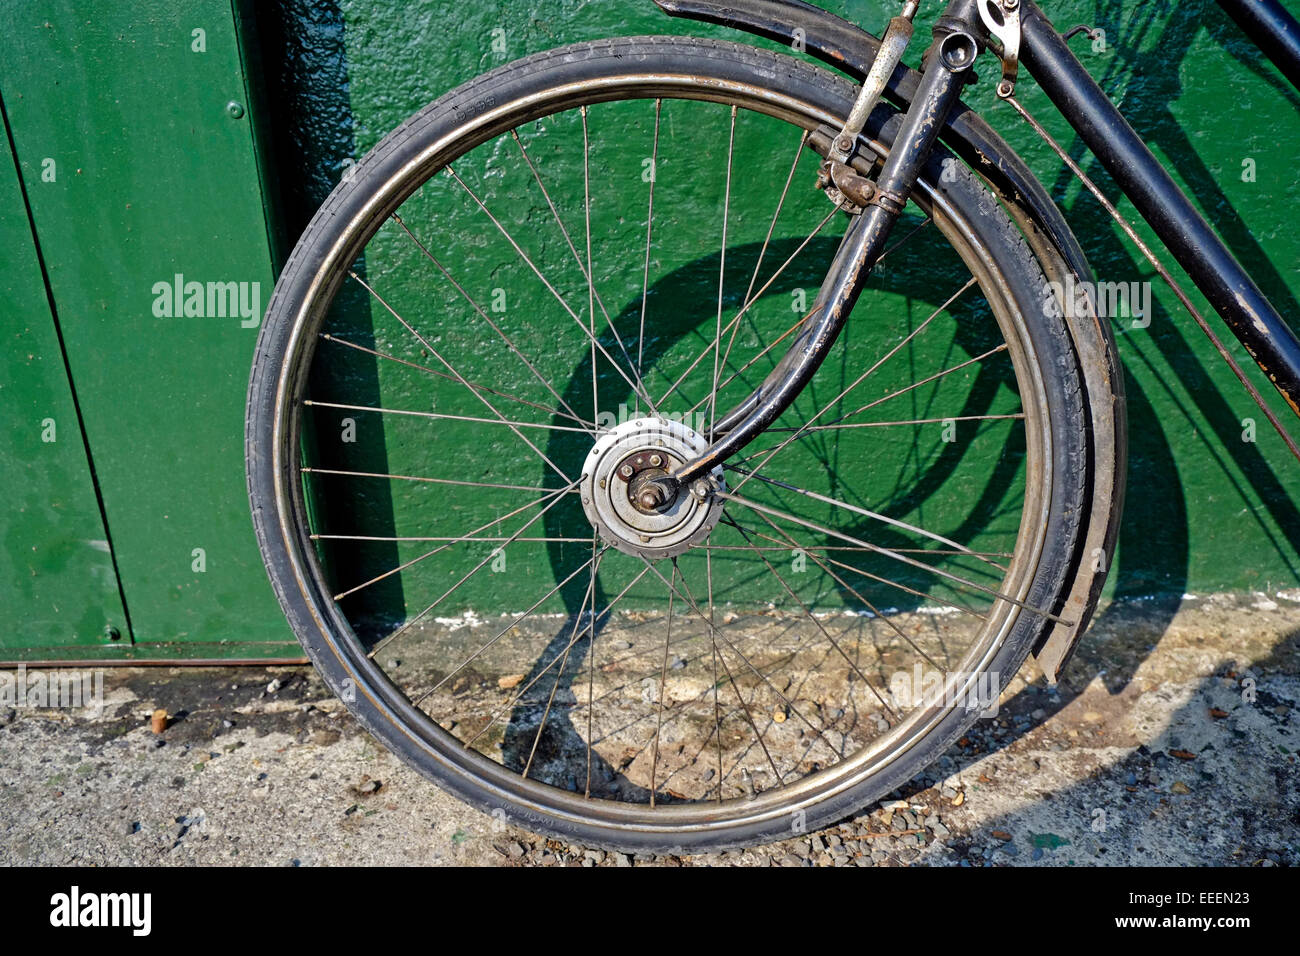 Oldtimer Fahrrad Rad nah am grünen Schuppen abgestellt Stockfoto